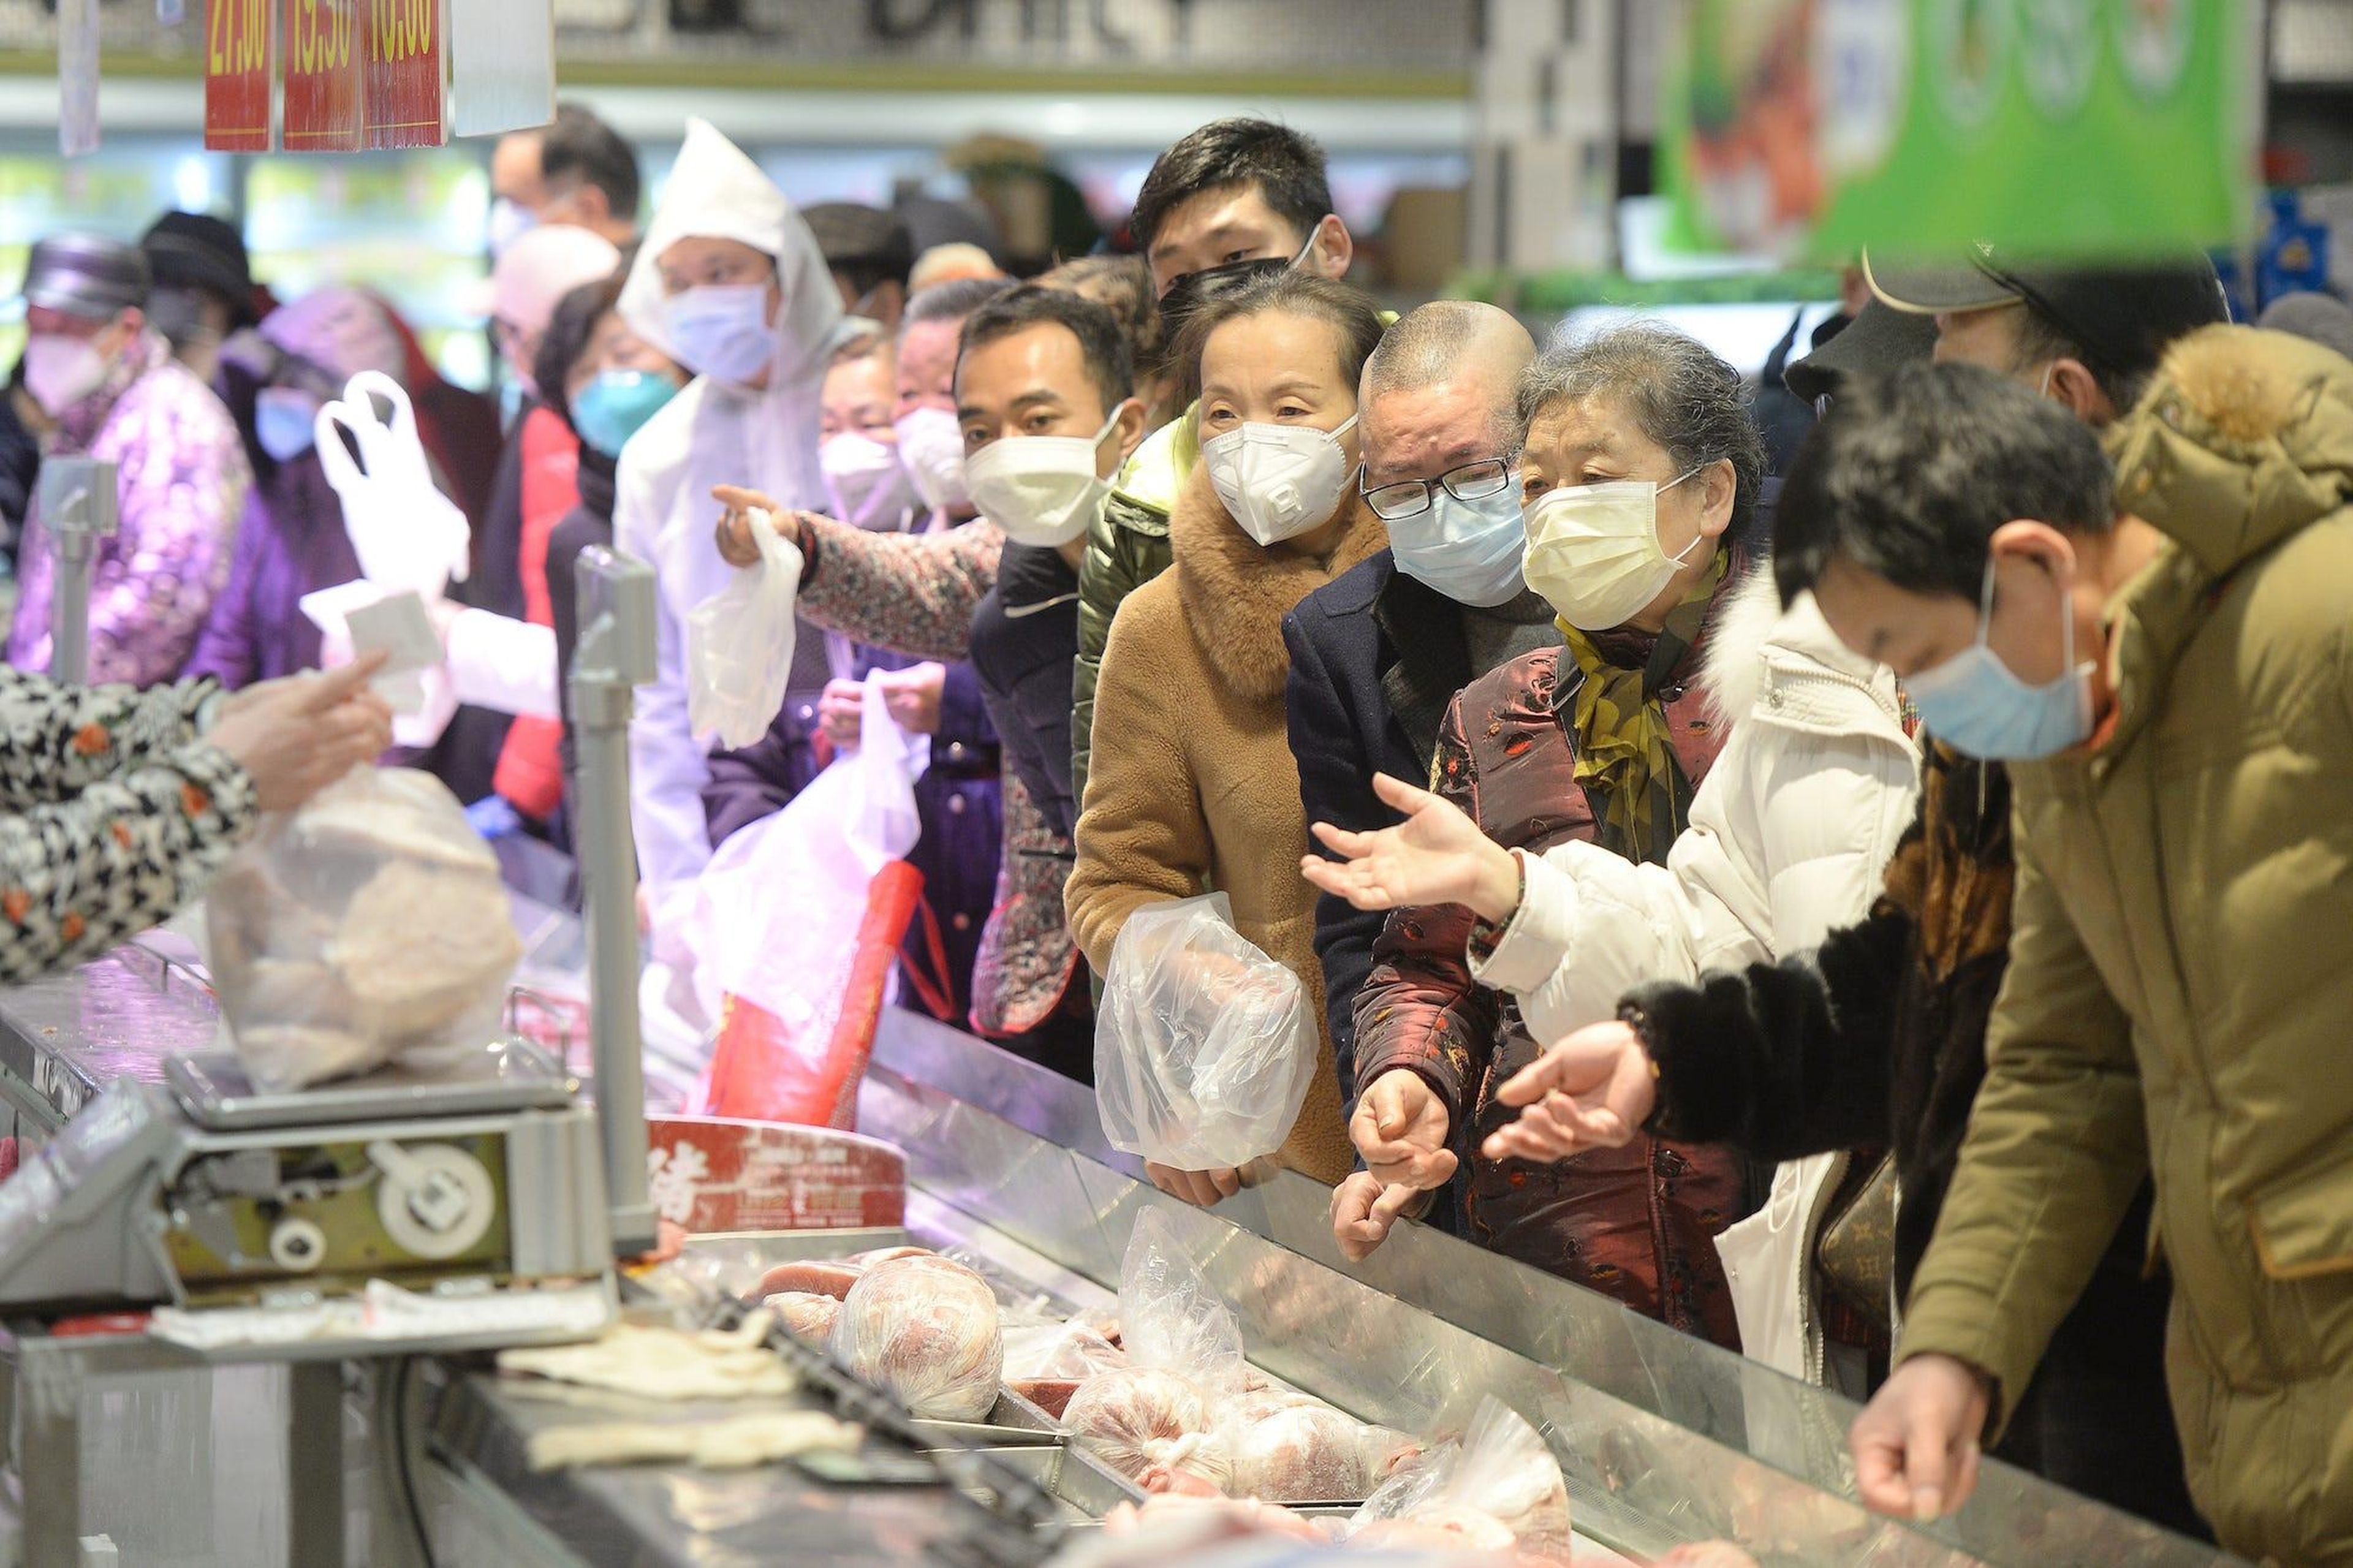 Clientes con mascarillas realizan sus compras dentro de un supermercado tras un brote del coronavirus en Wuhan, provincia de Hubei, China, el 10 de febrero de 2020.